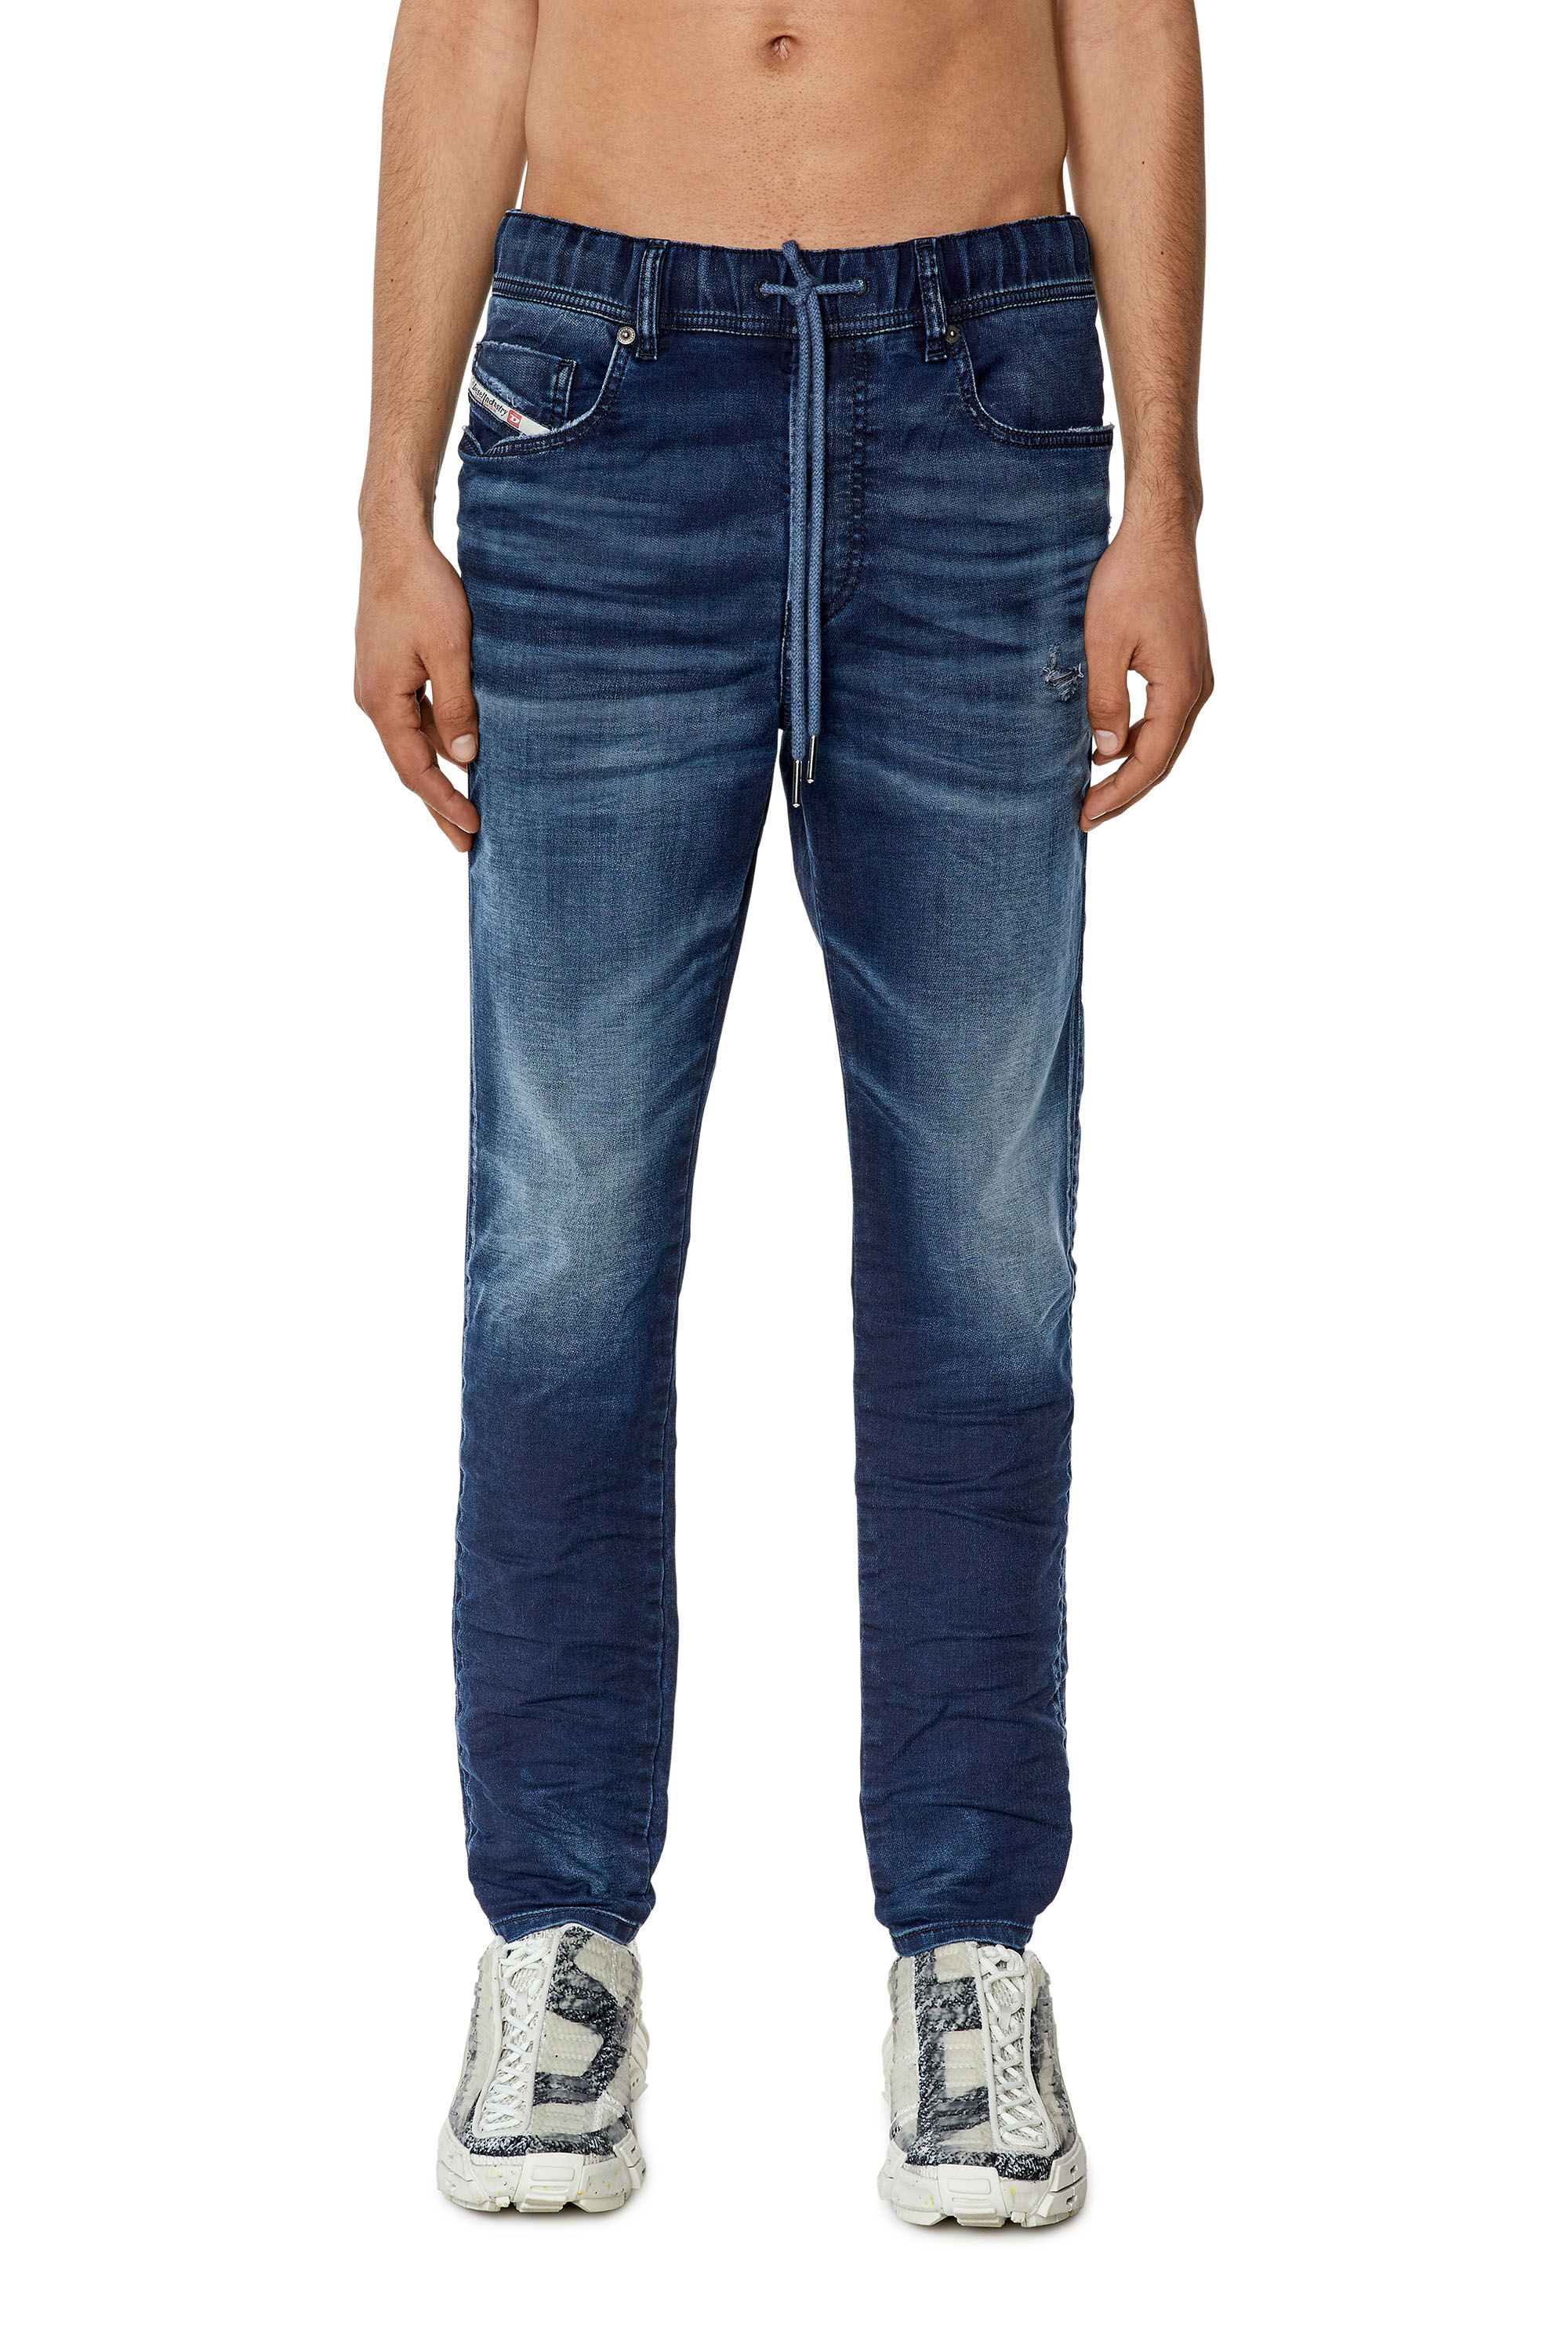 Diesel - Slim E-Spender JoggJeans® 068FQ, Dark Blue - Image 3